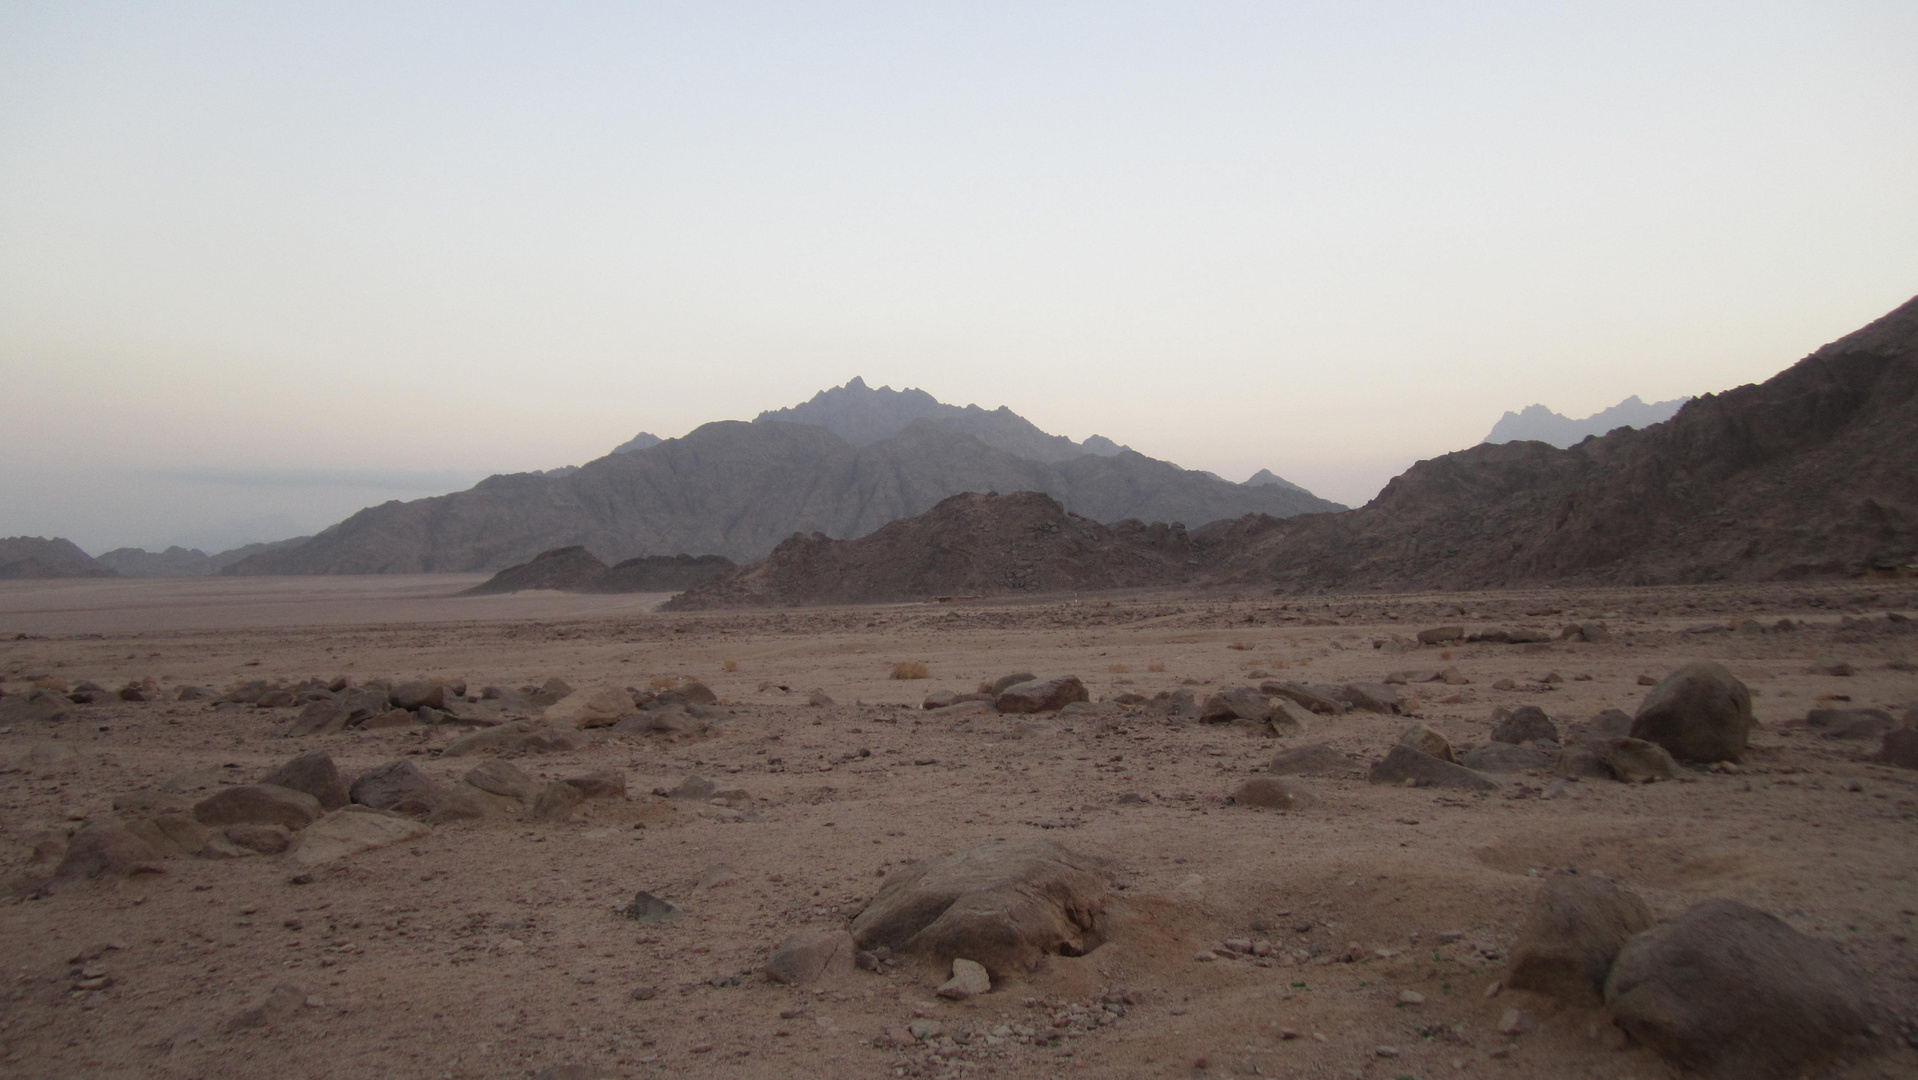 Wüste 2013